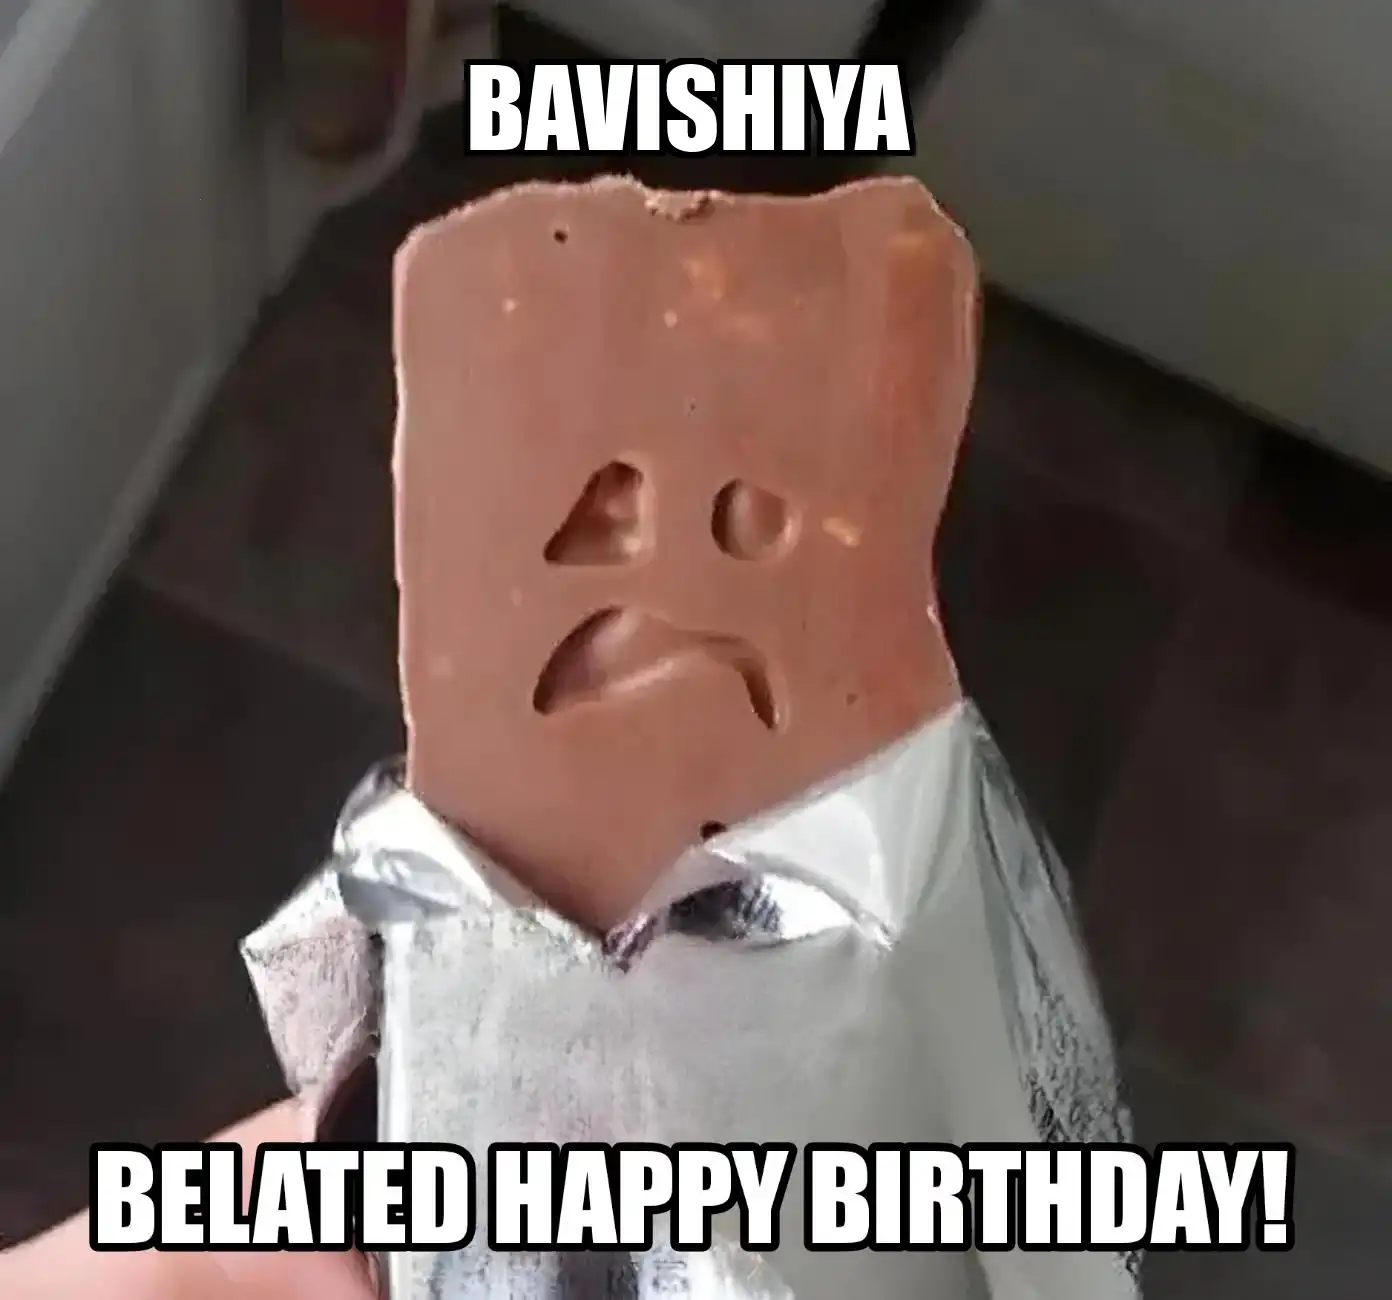 Happy Birthday Bavishiya Belated Happy Birthday Meme